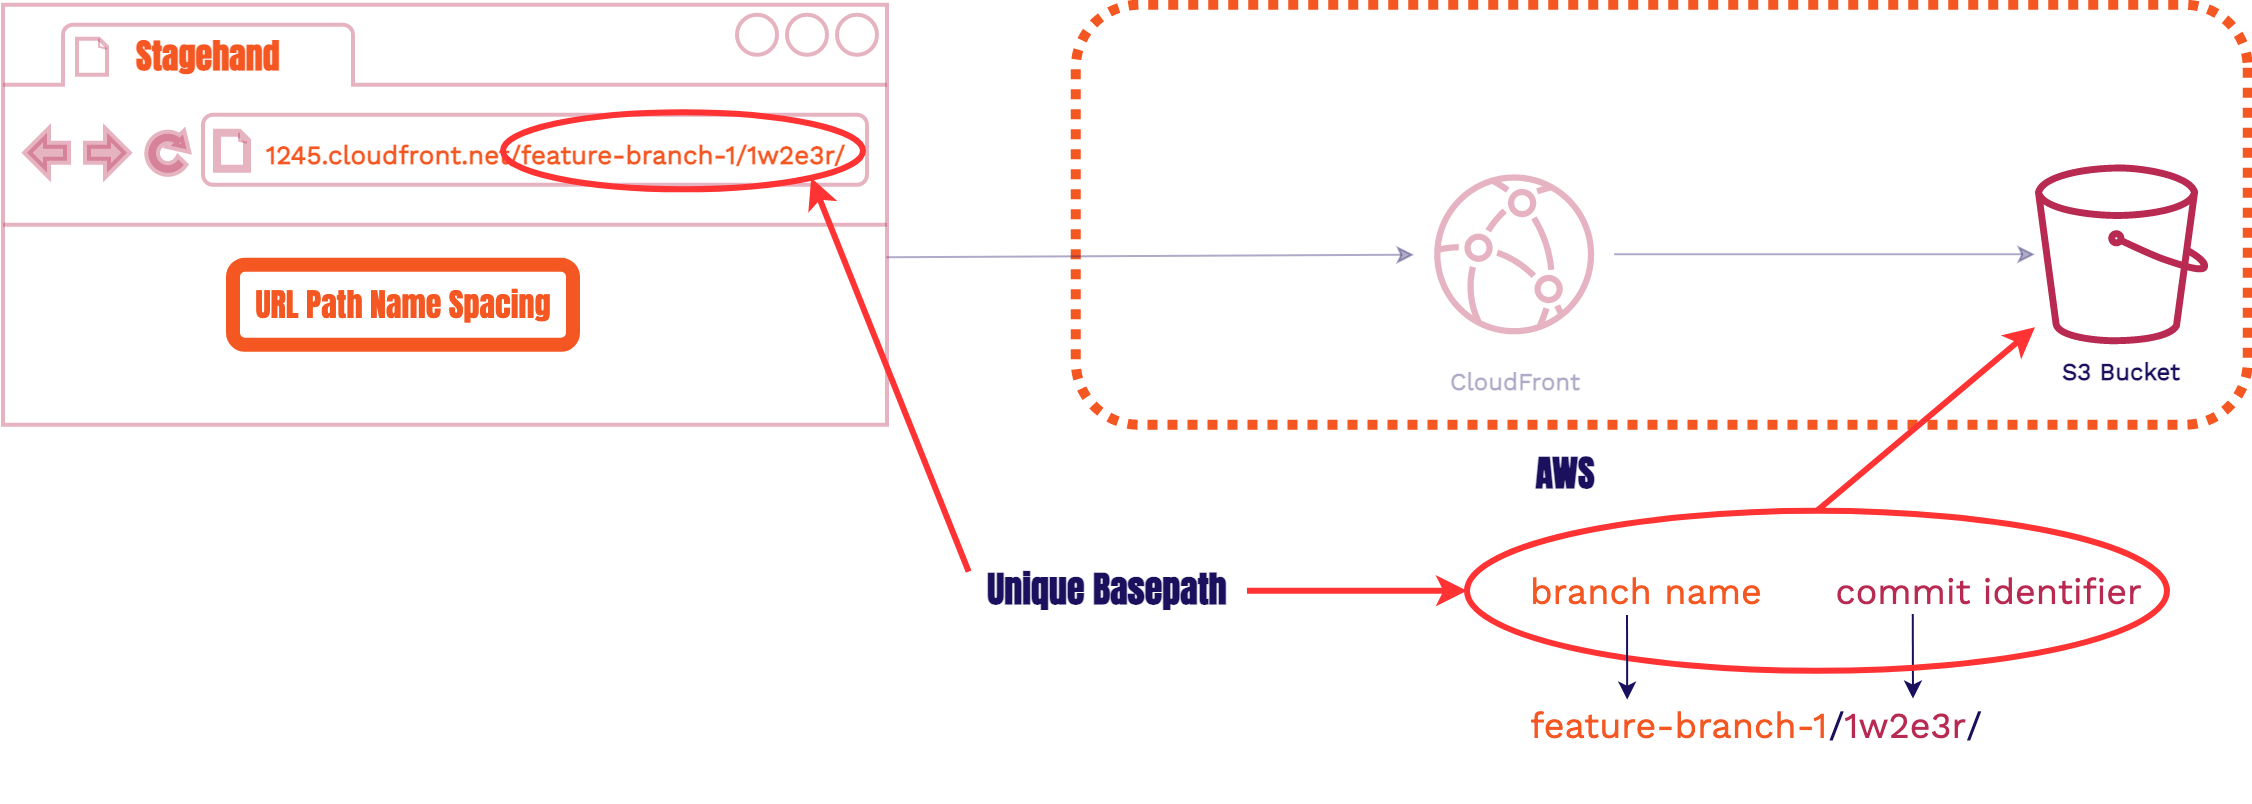 url path name spacing diagram